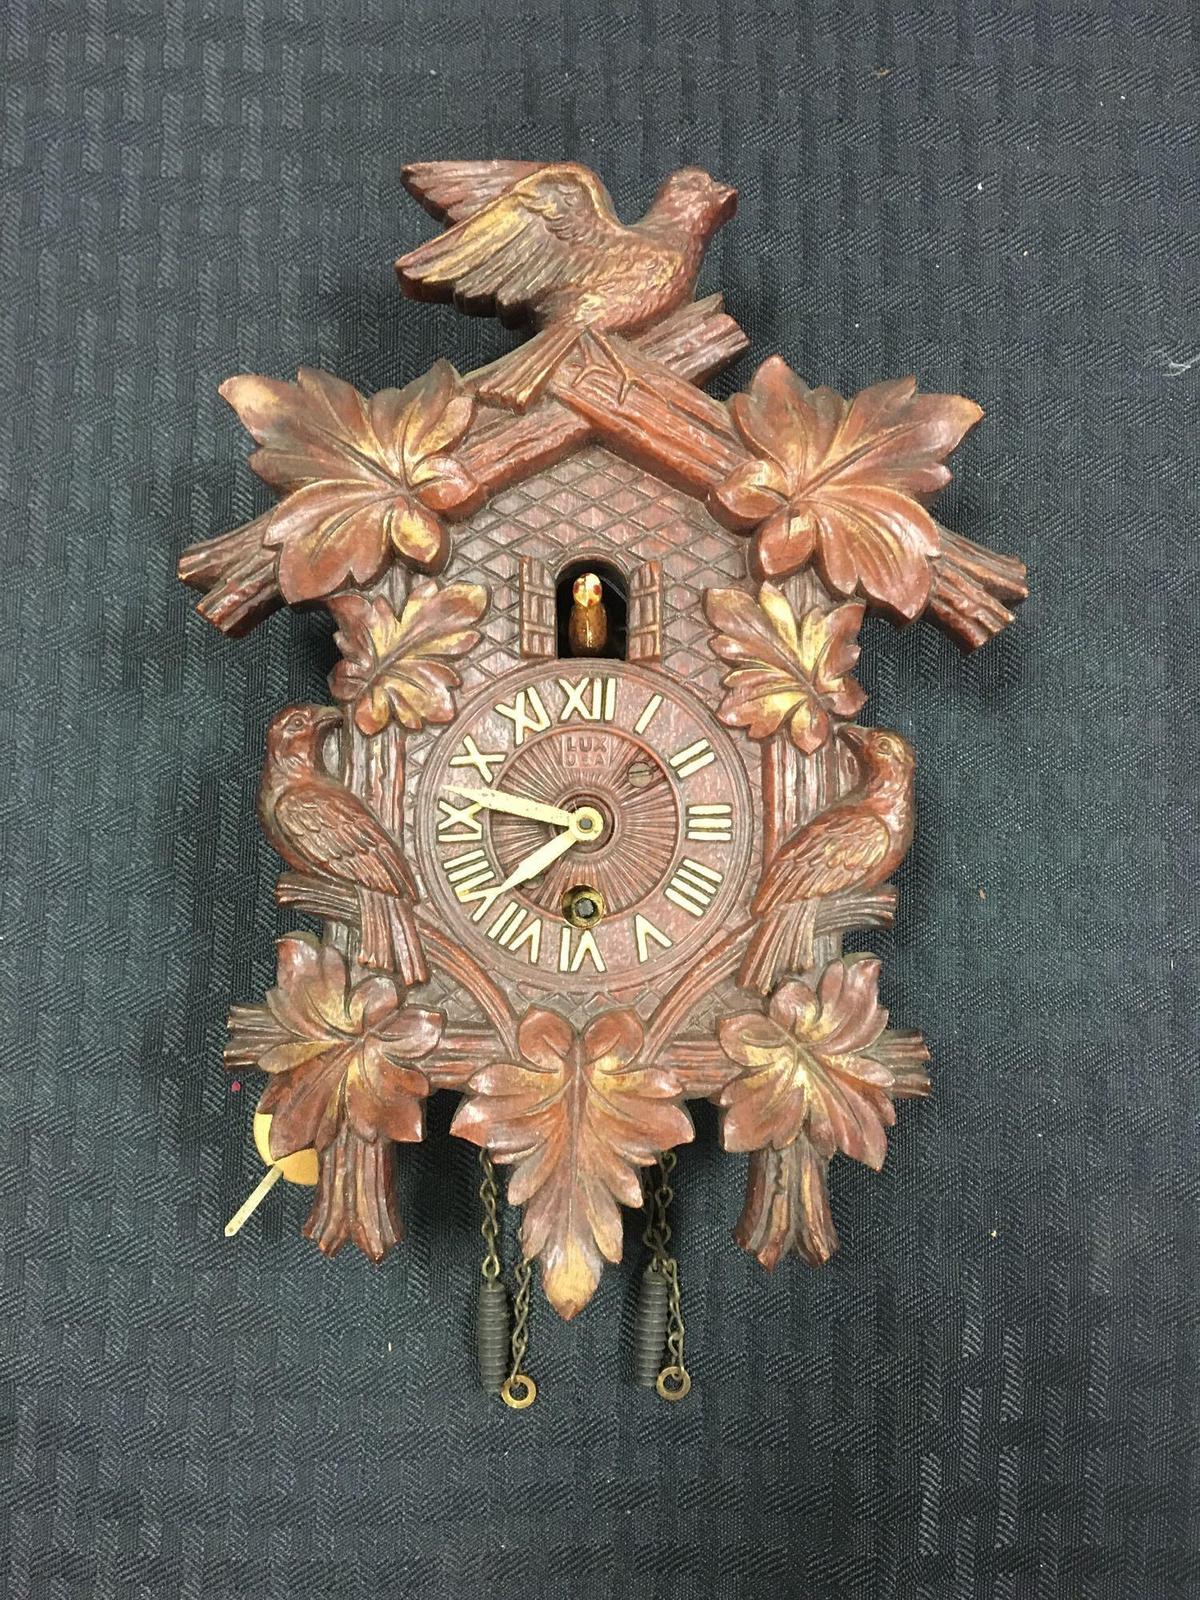 Antique Lux Cuckoo clock